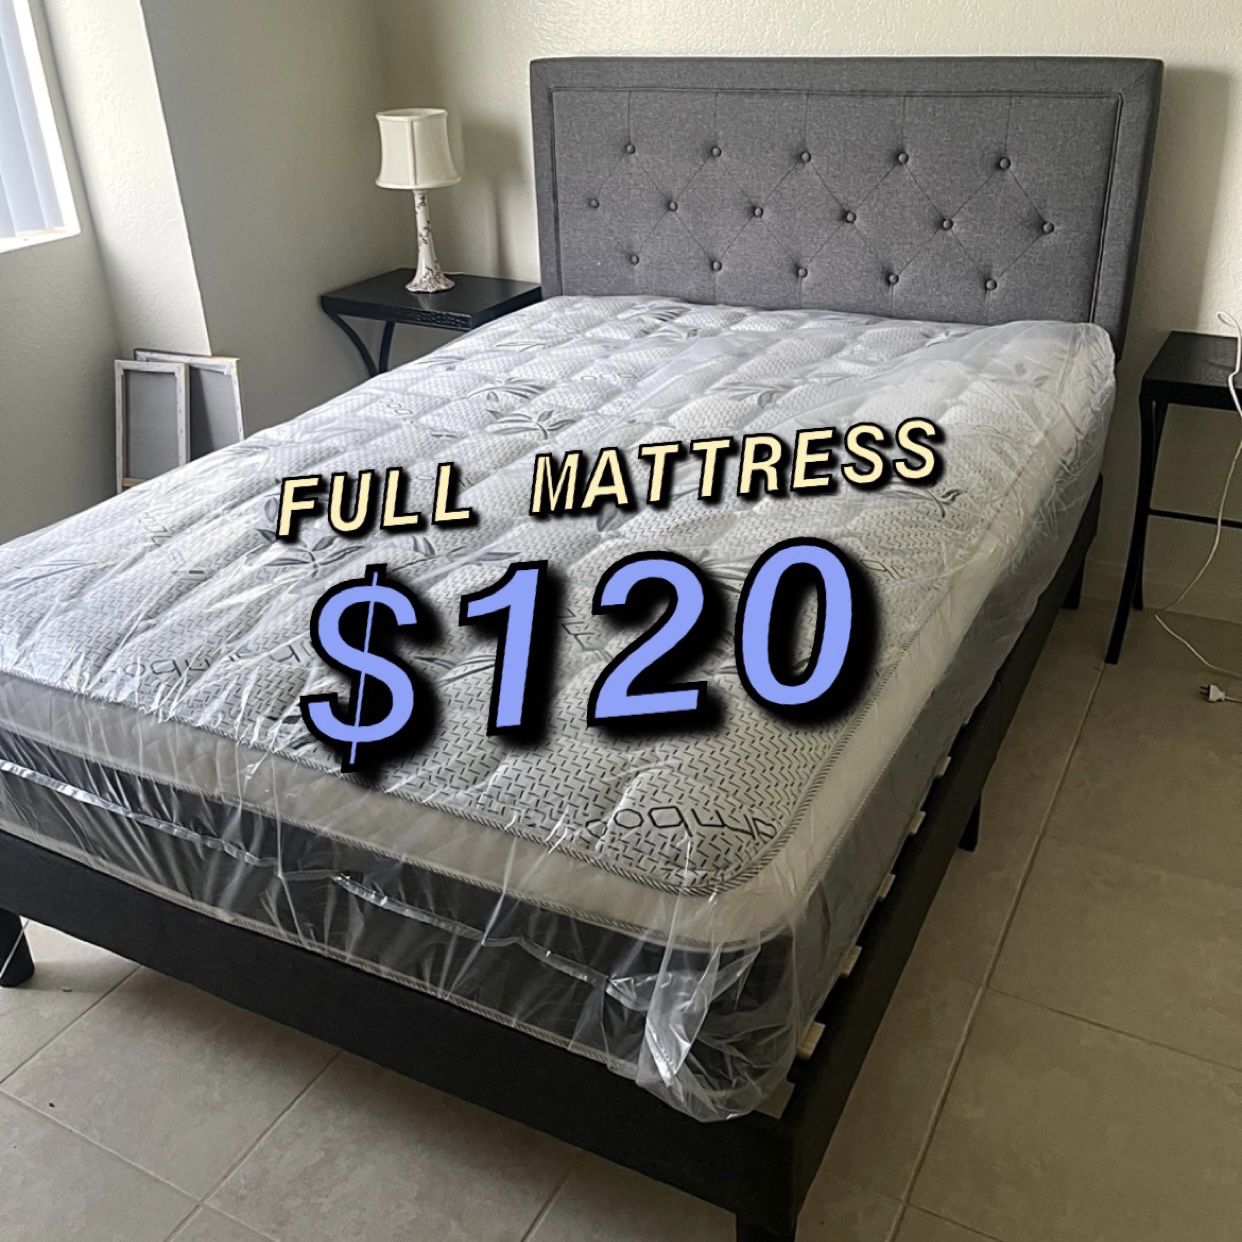 Full Mattress $120